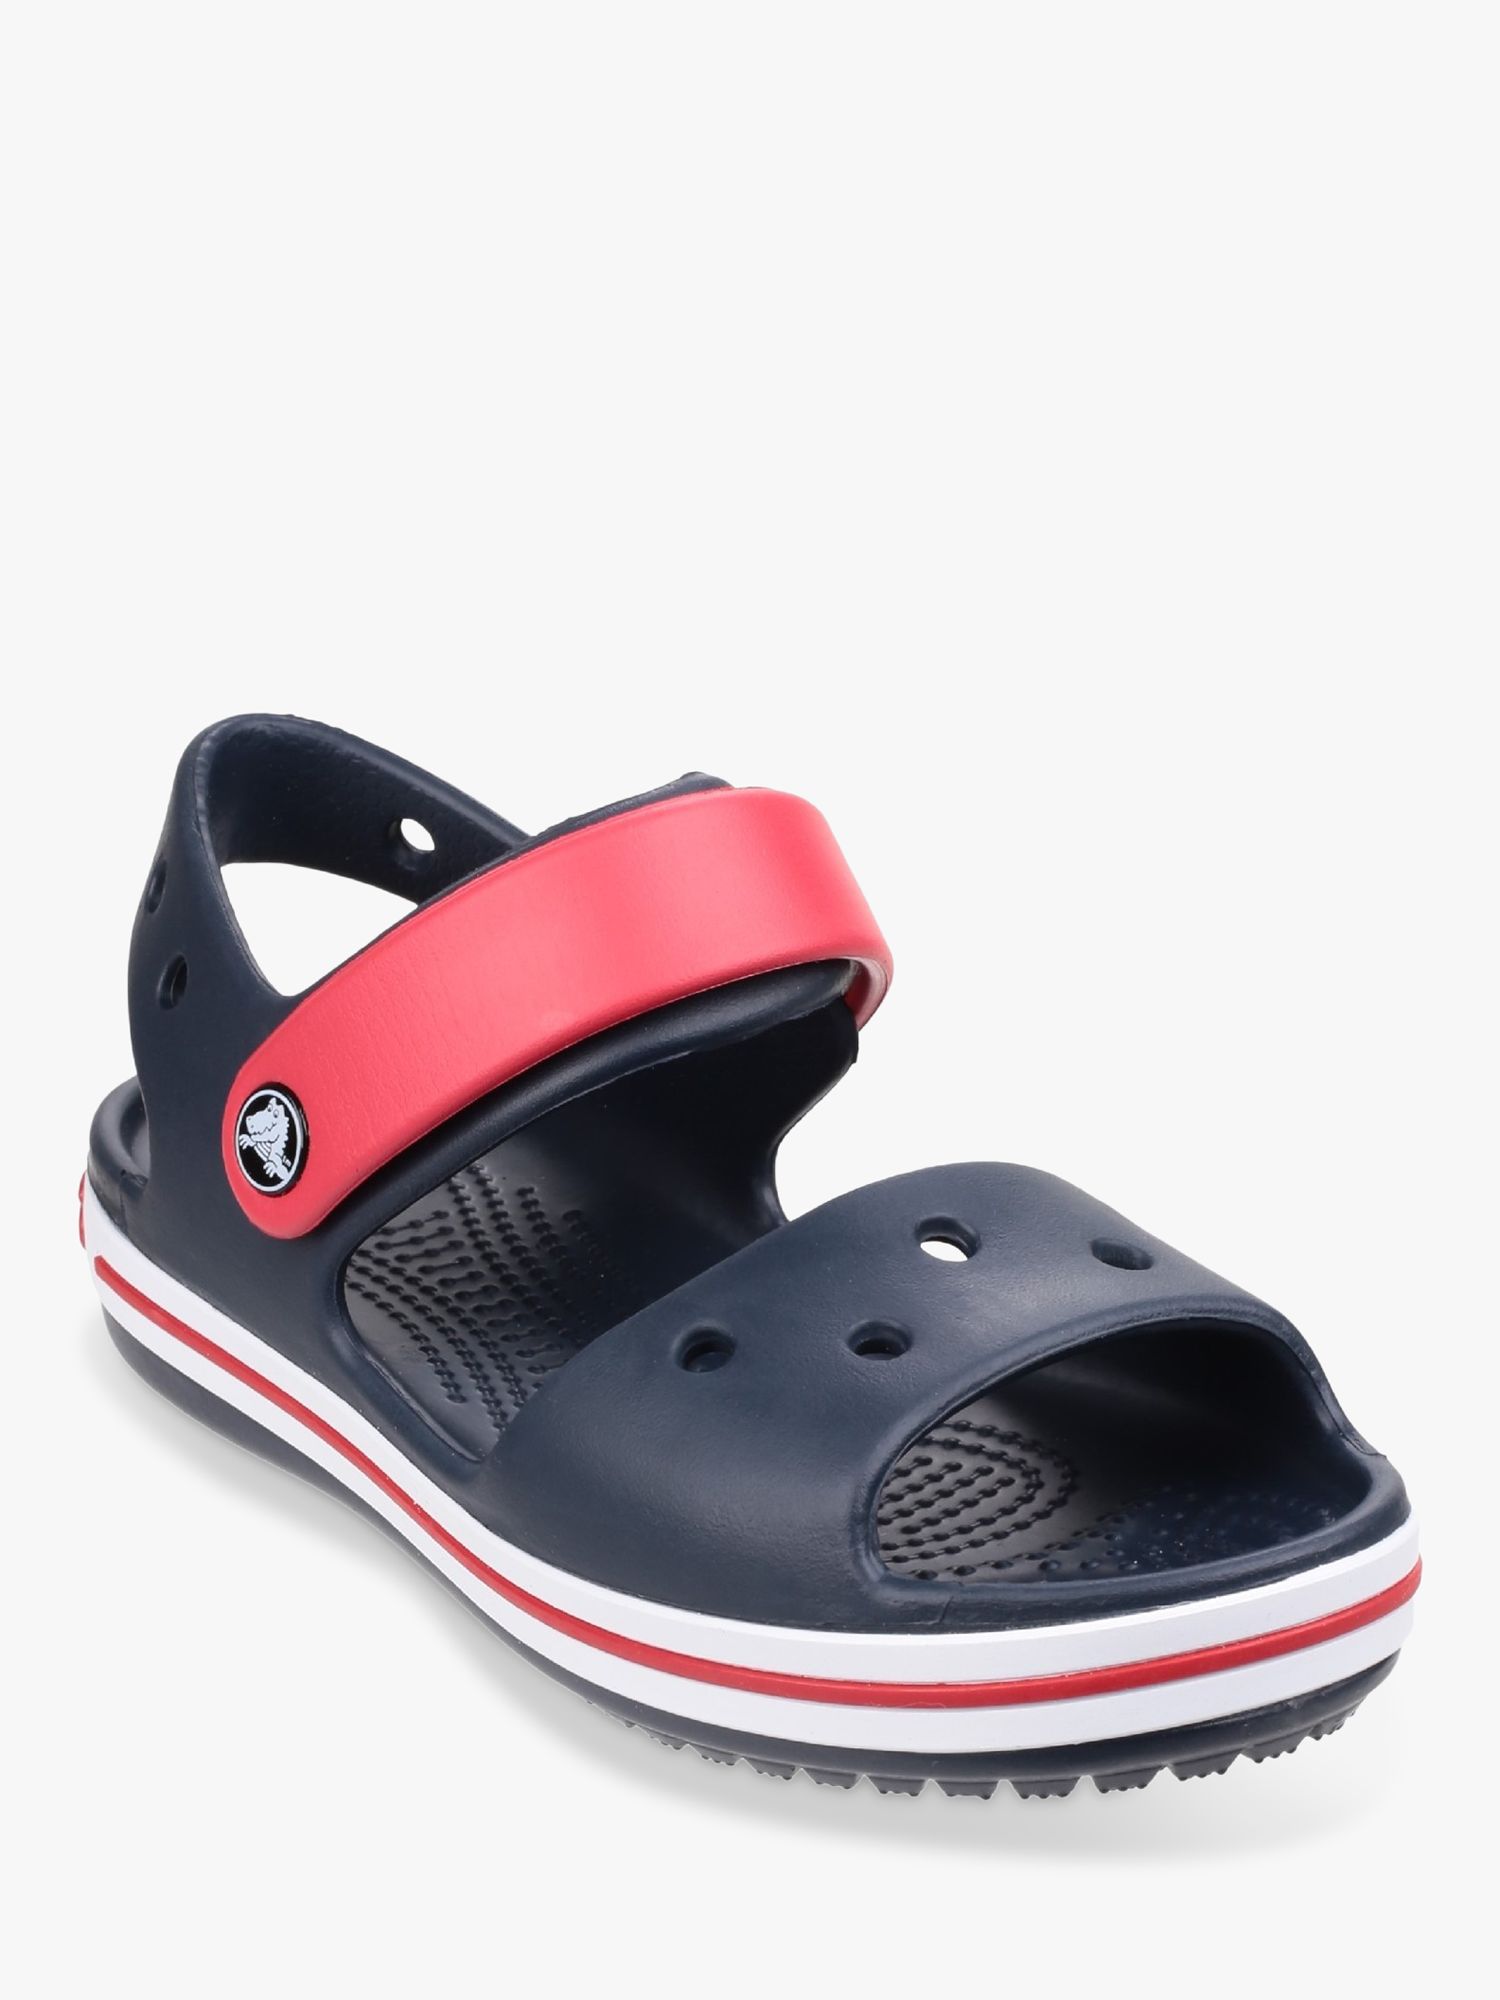 Crocs Kids' Crocband Sandals, Navy/Red, 4 Jnr